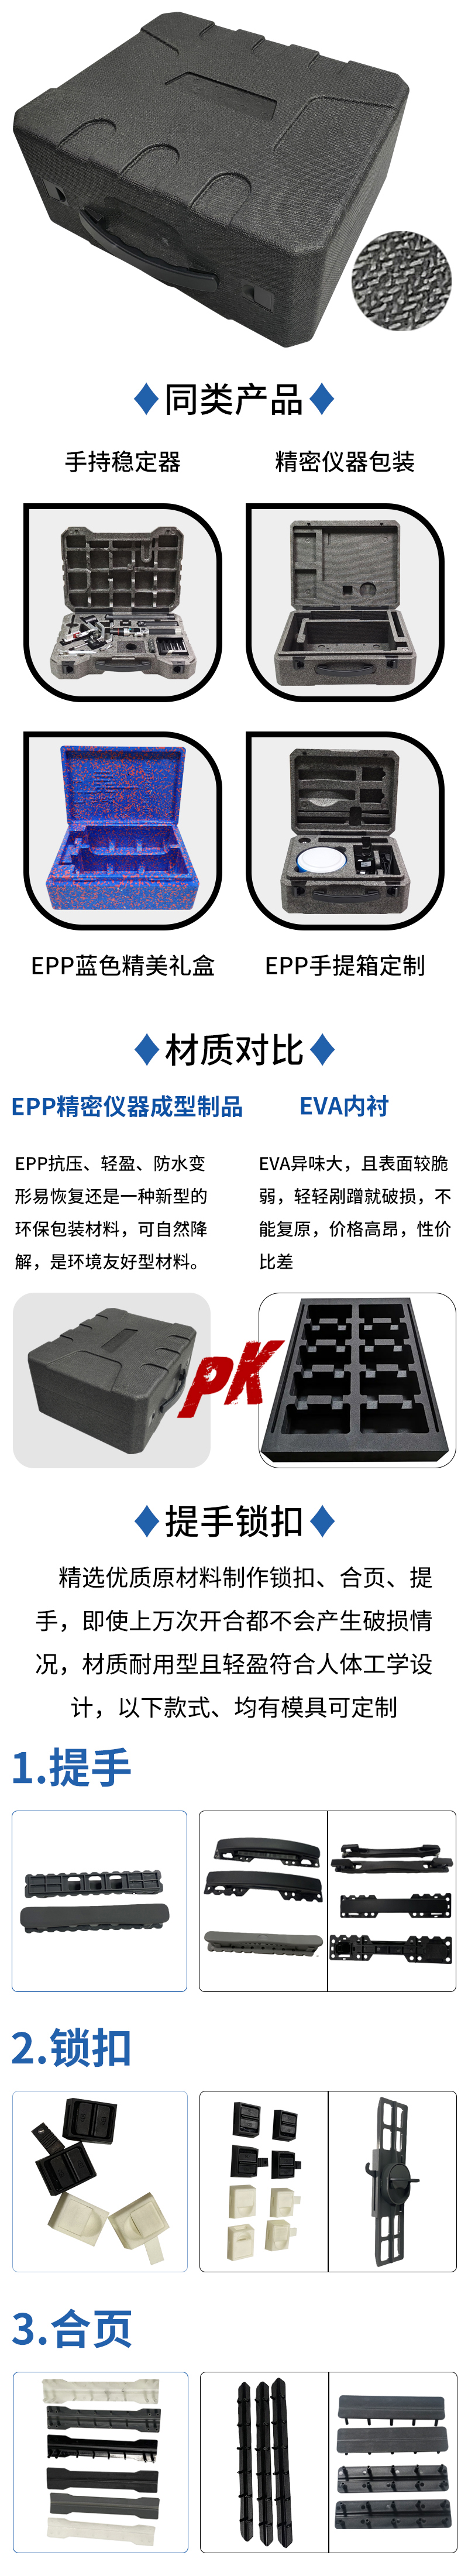 官网EPP精密仪器成型制品_10.jpg